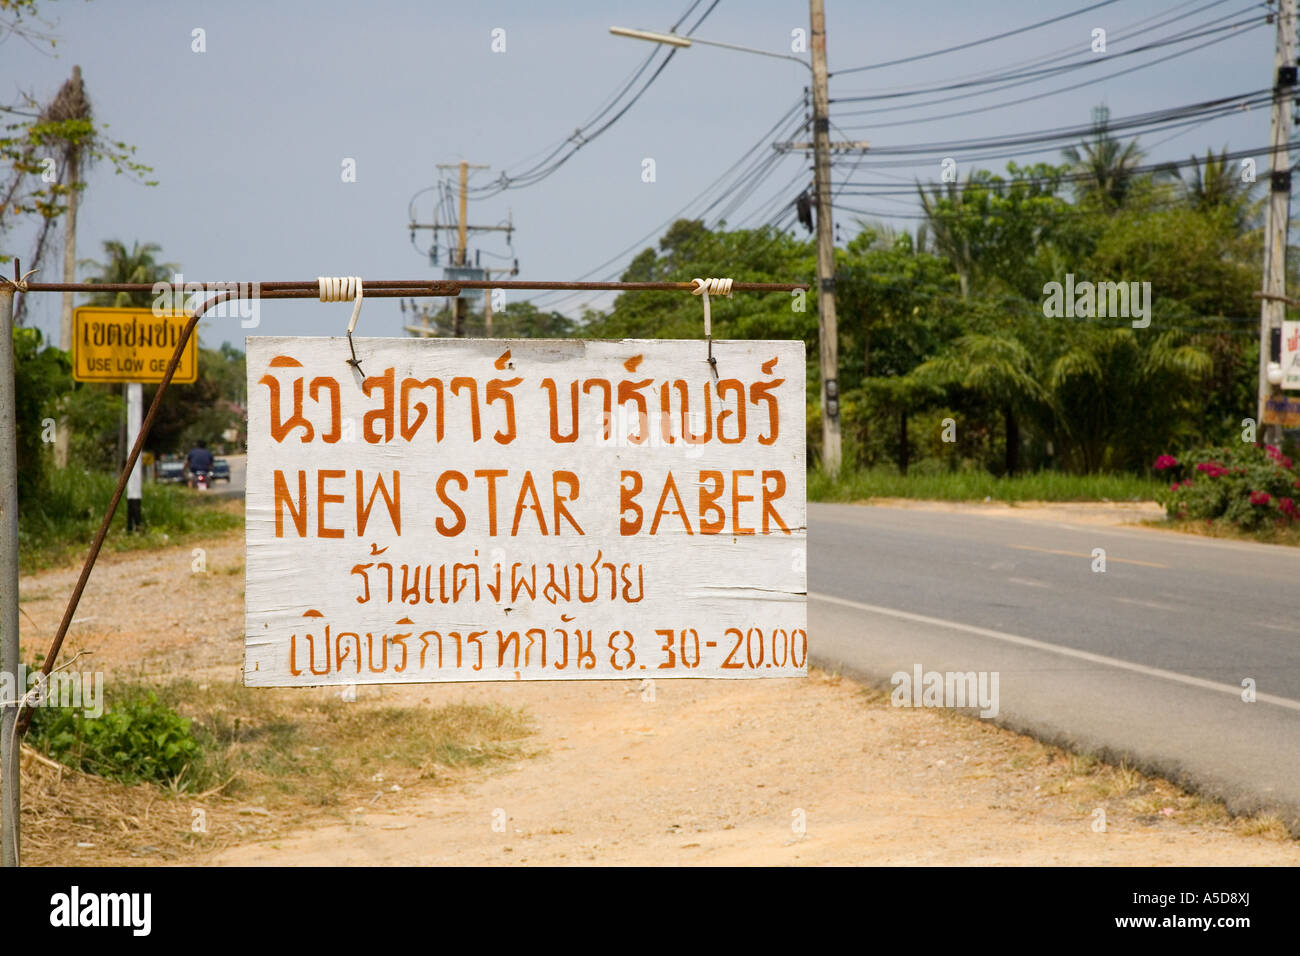 Signe mal orthographié à l'étranger; New Star Barber ou signe latéral de route mal orthographié Krabi Province Thaïlande Asie Banque D'Images